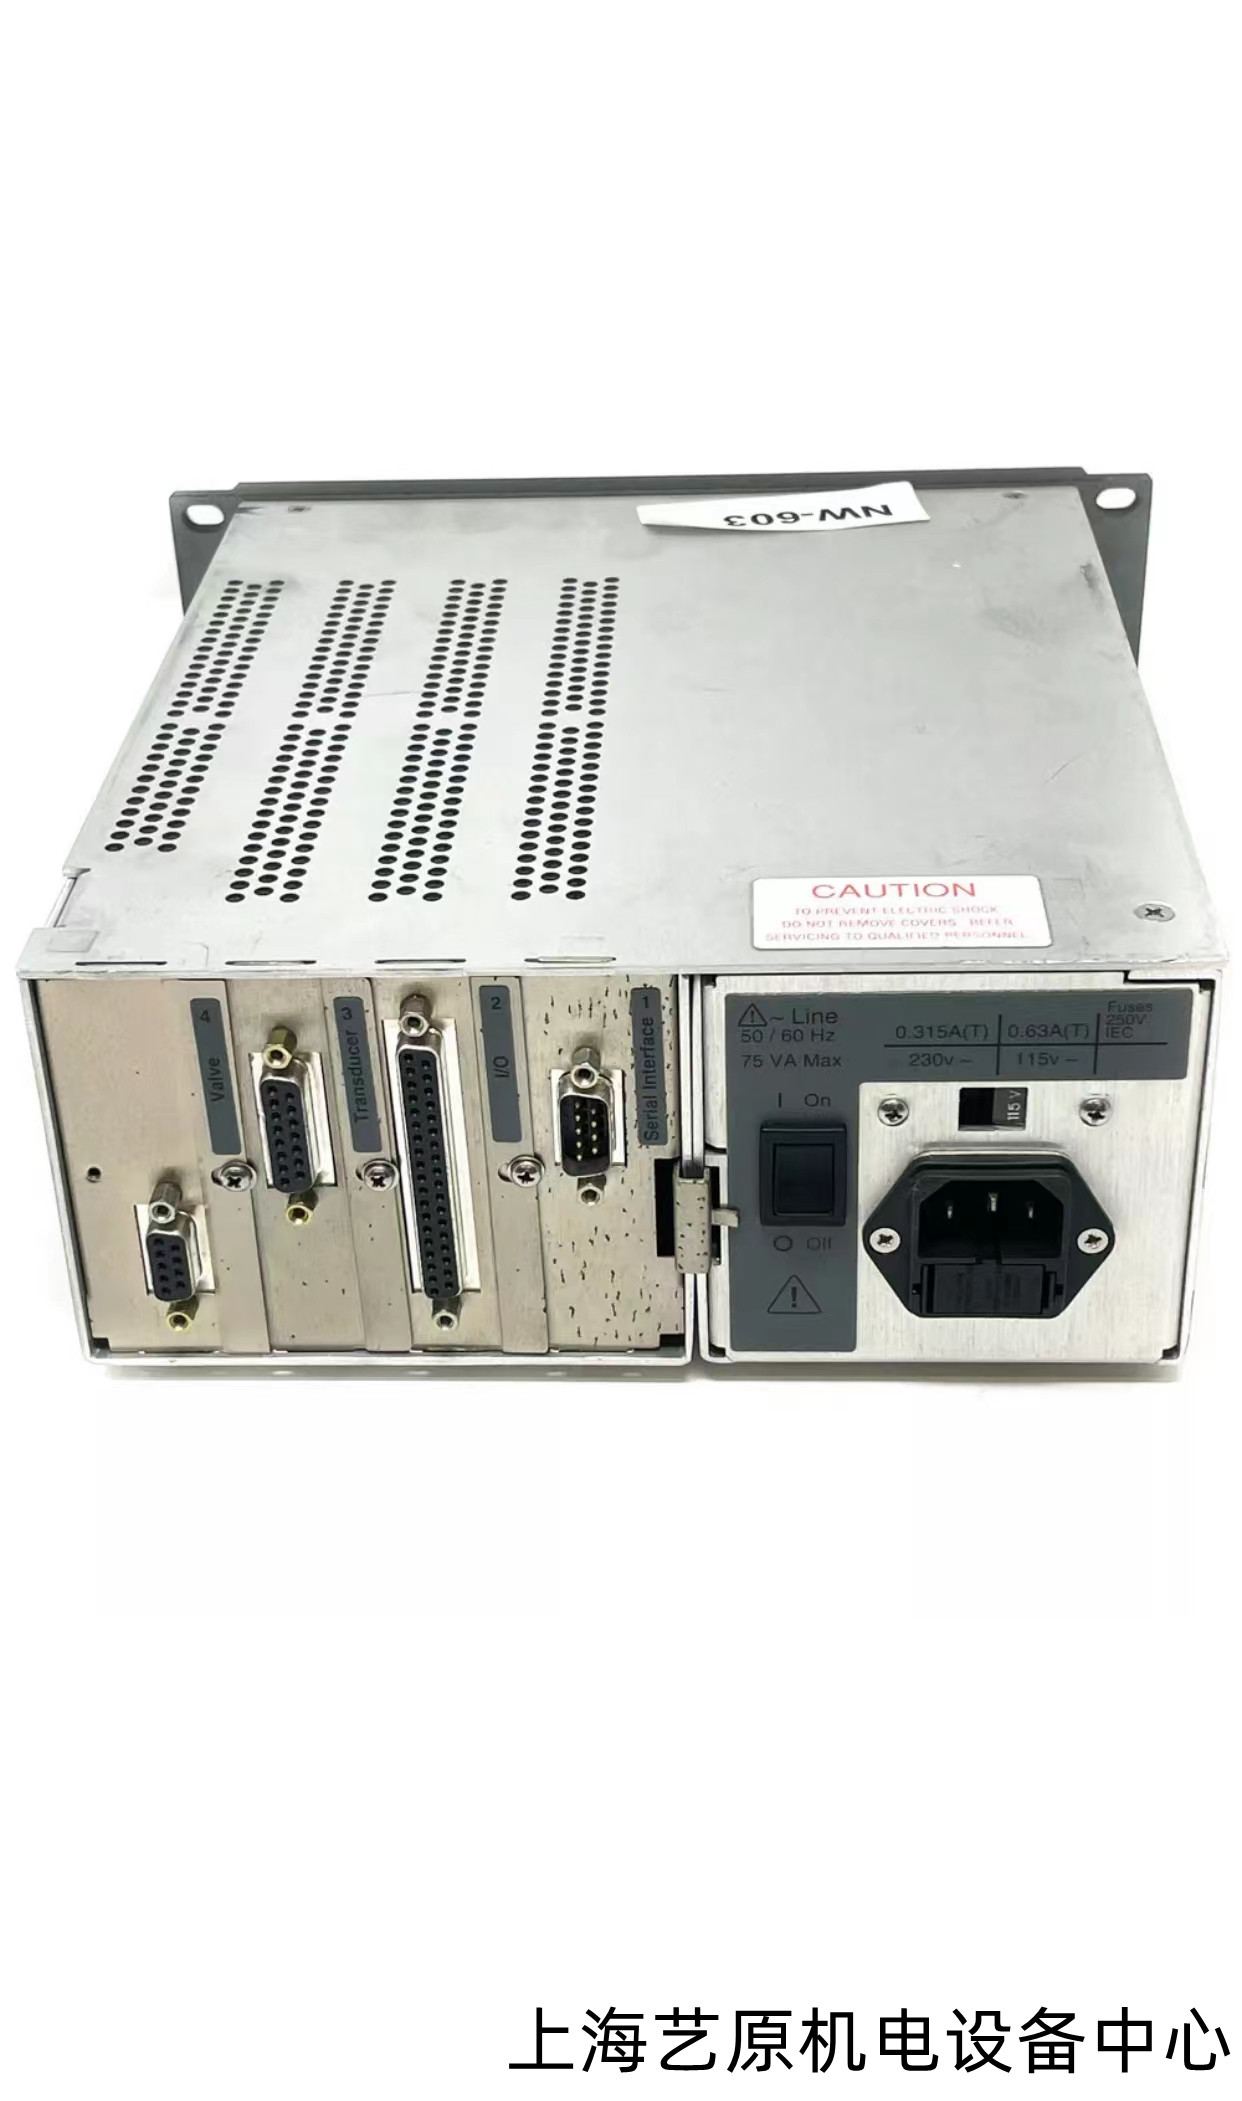 绍兴MKS 651CD2S1N压力阀控制器维修维修 庞大的配件资料库 服务有保证